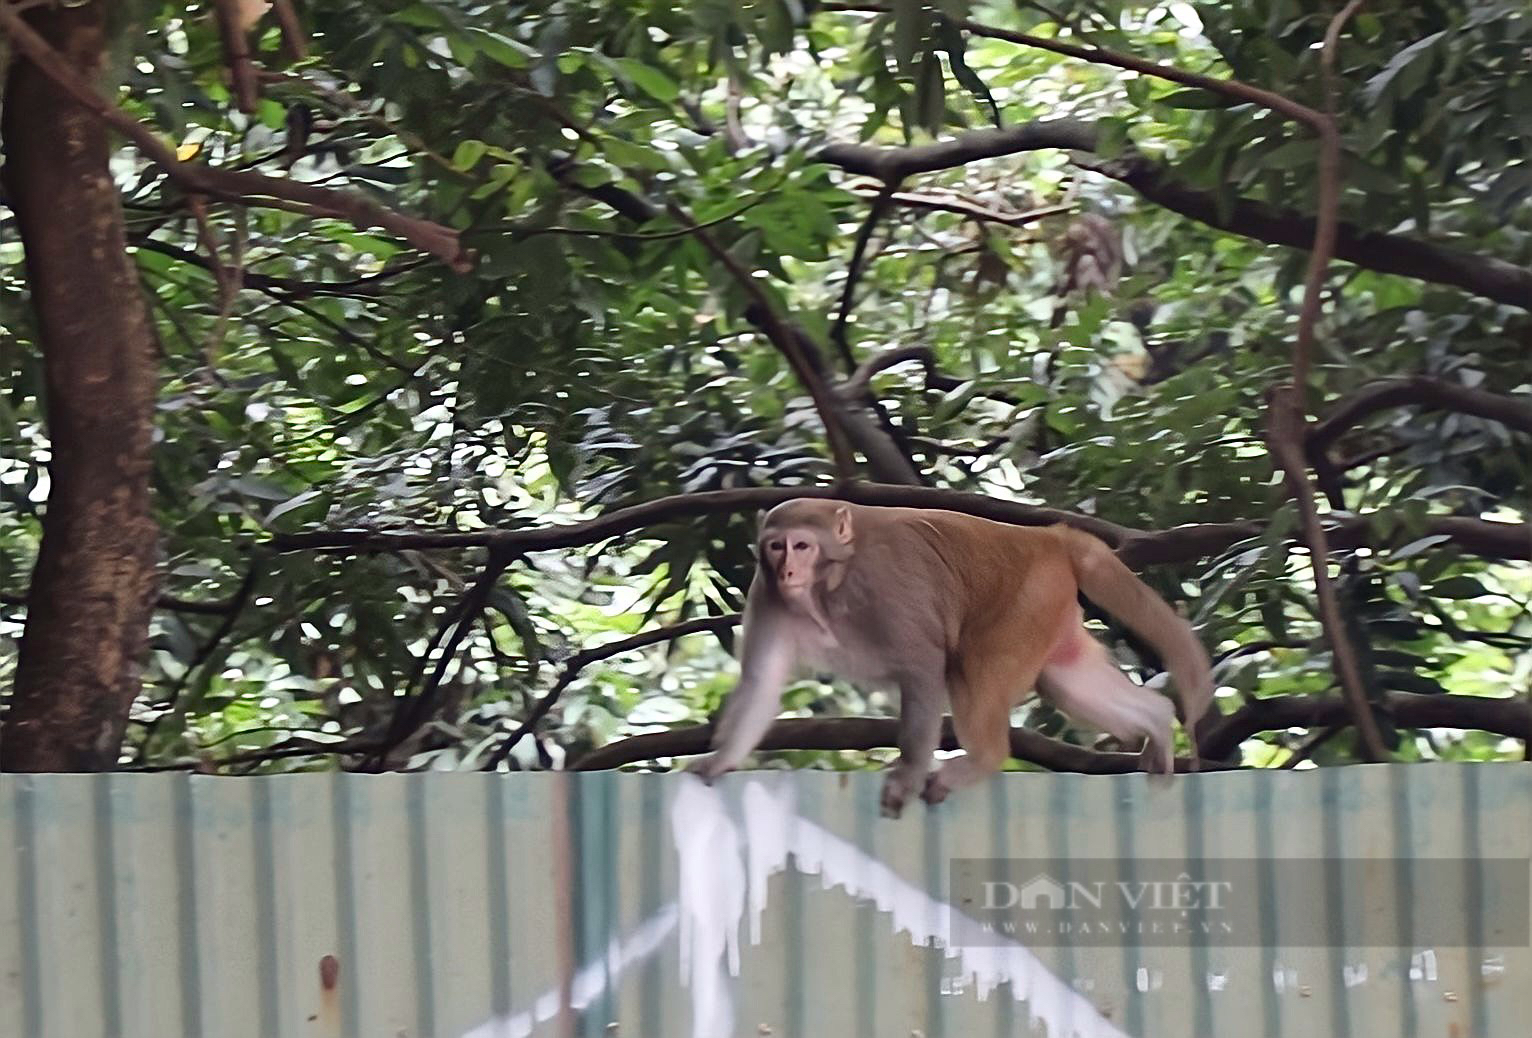 Khỉ hoang: Khỉ hoang là những sinh vật sống mạo hiểm và vô cùng thú vị. Hãy xem những hình ảnh đầy sức sống của những chú khỉ hoang đáng yêu để khám phá thế giới đầy màu sắc và kỳ thú của chúng.